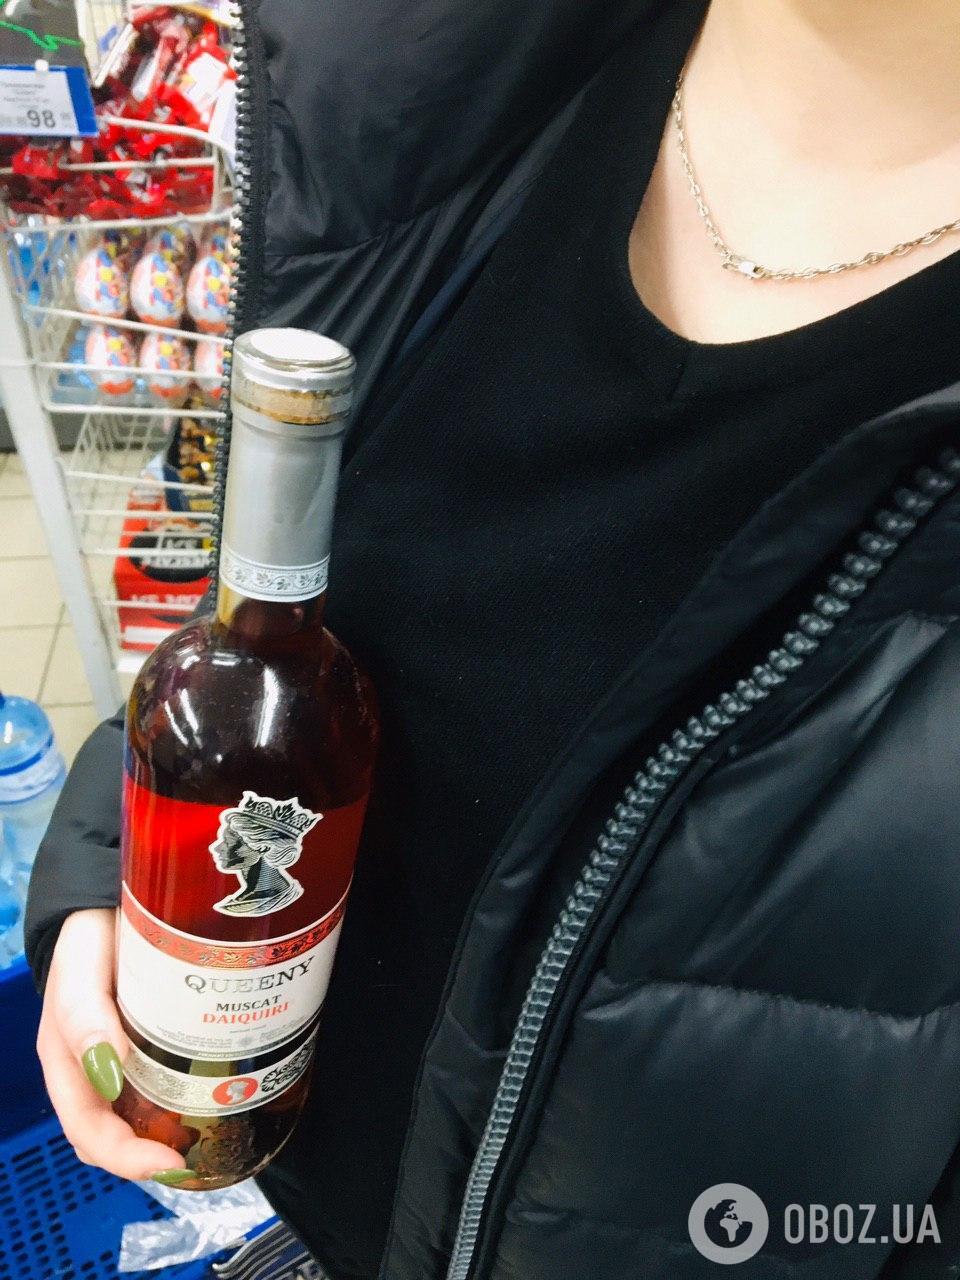 Супермаркеты города не продают алкоголь без документов